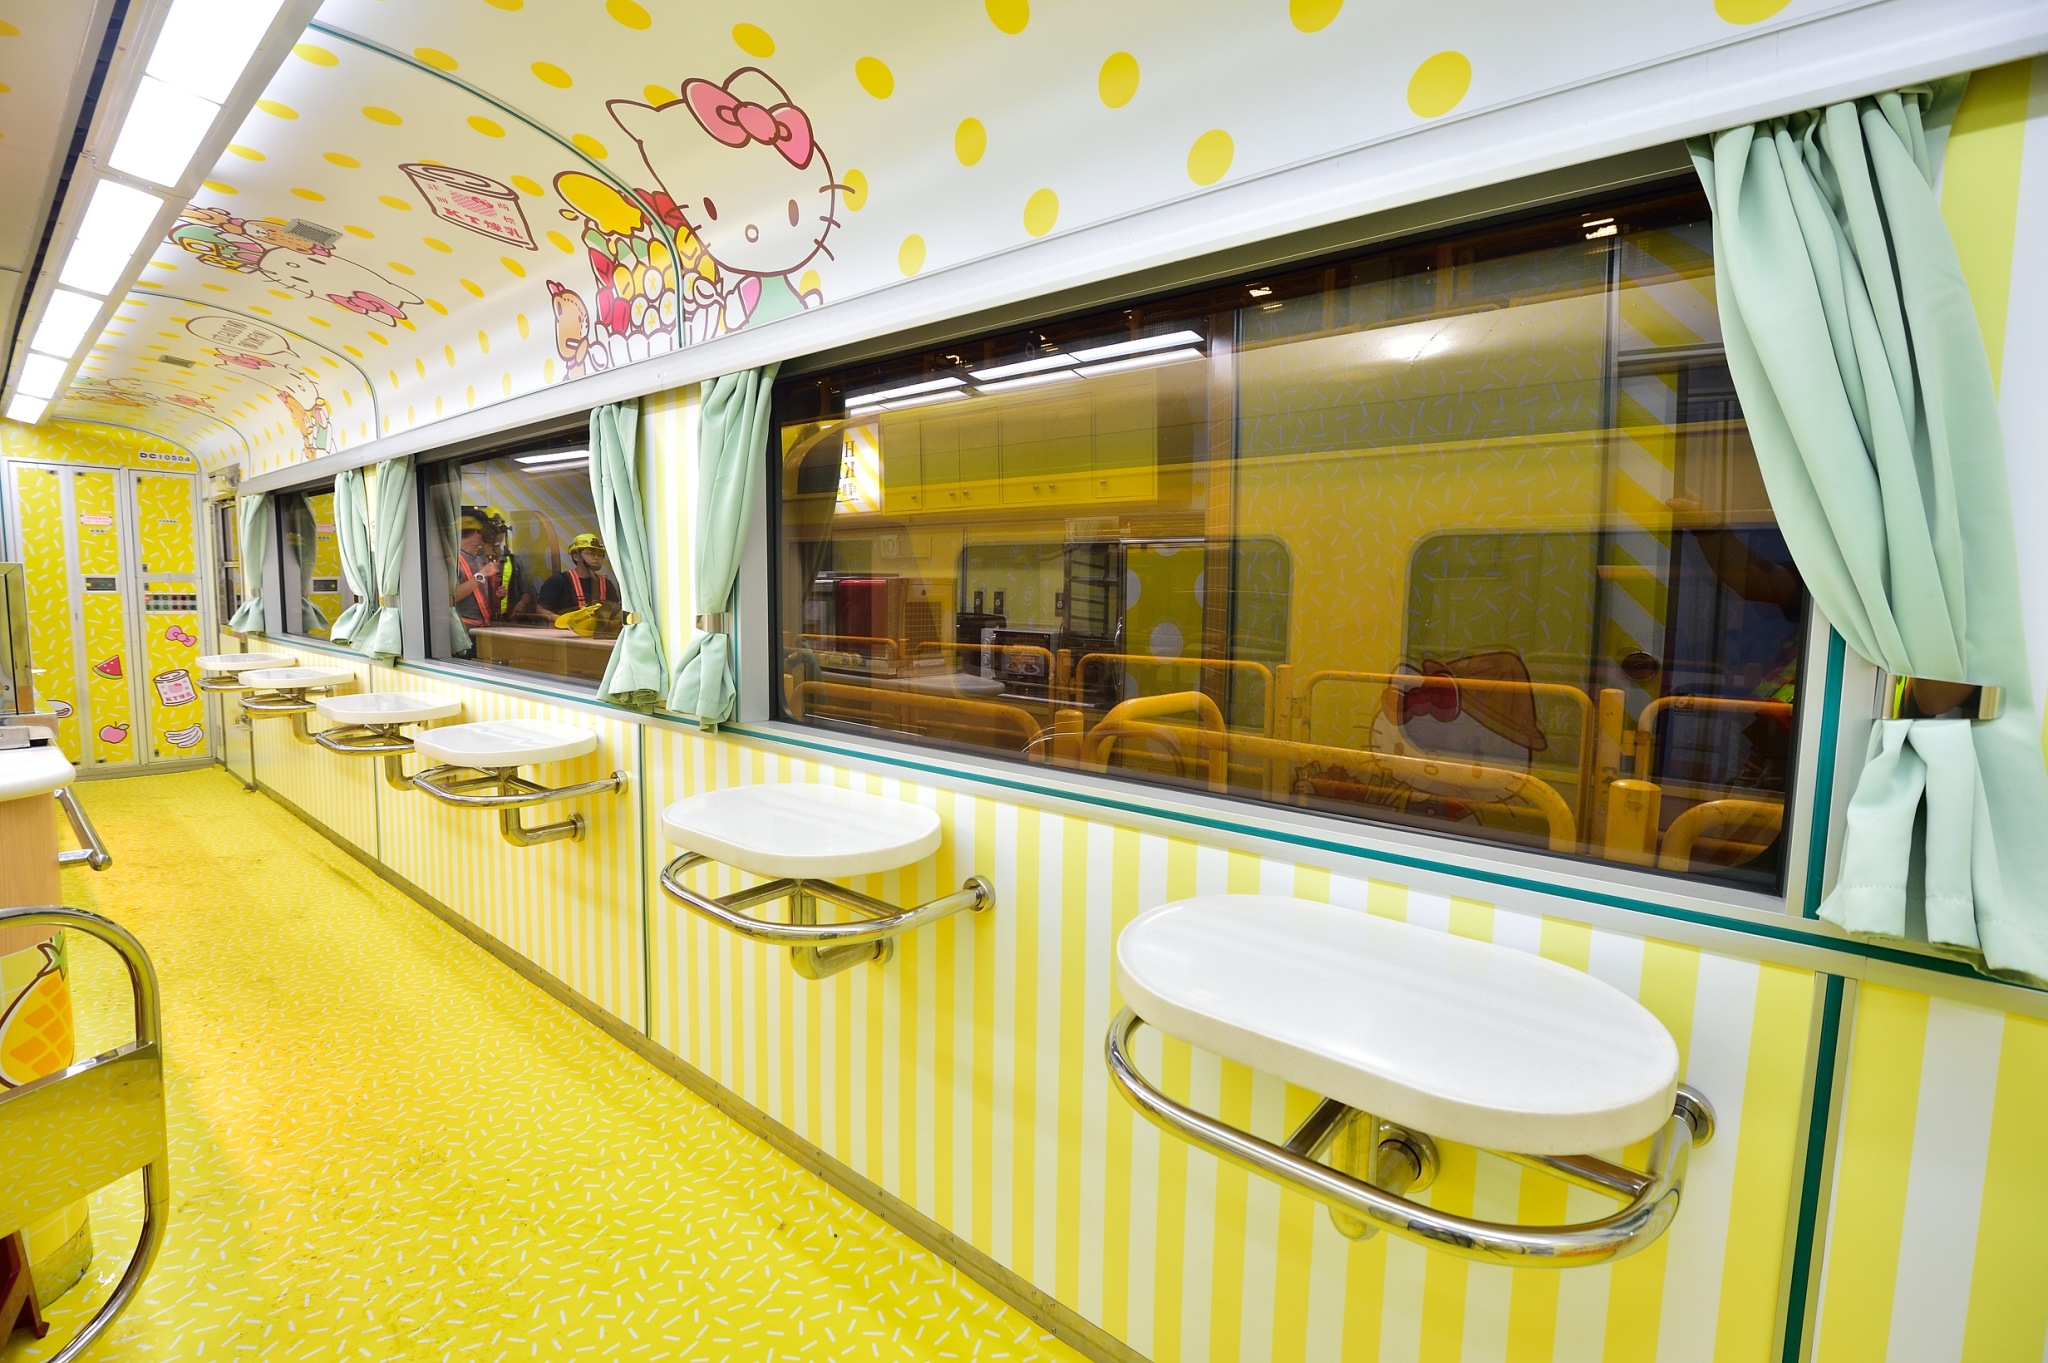 【7月全新啟航】環島之星Hello Kitty繽紛列車  超多打卡位！